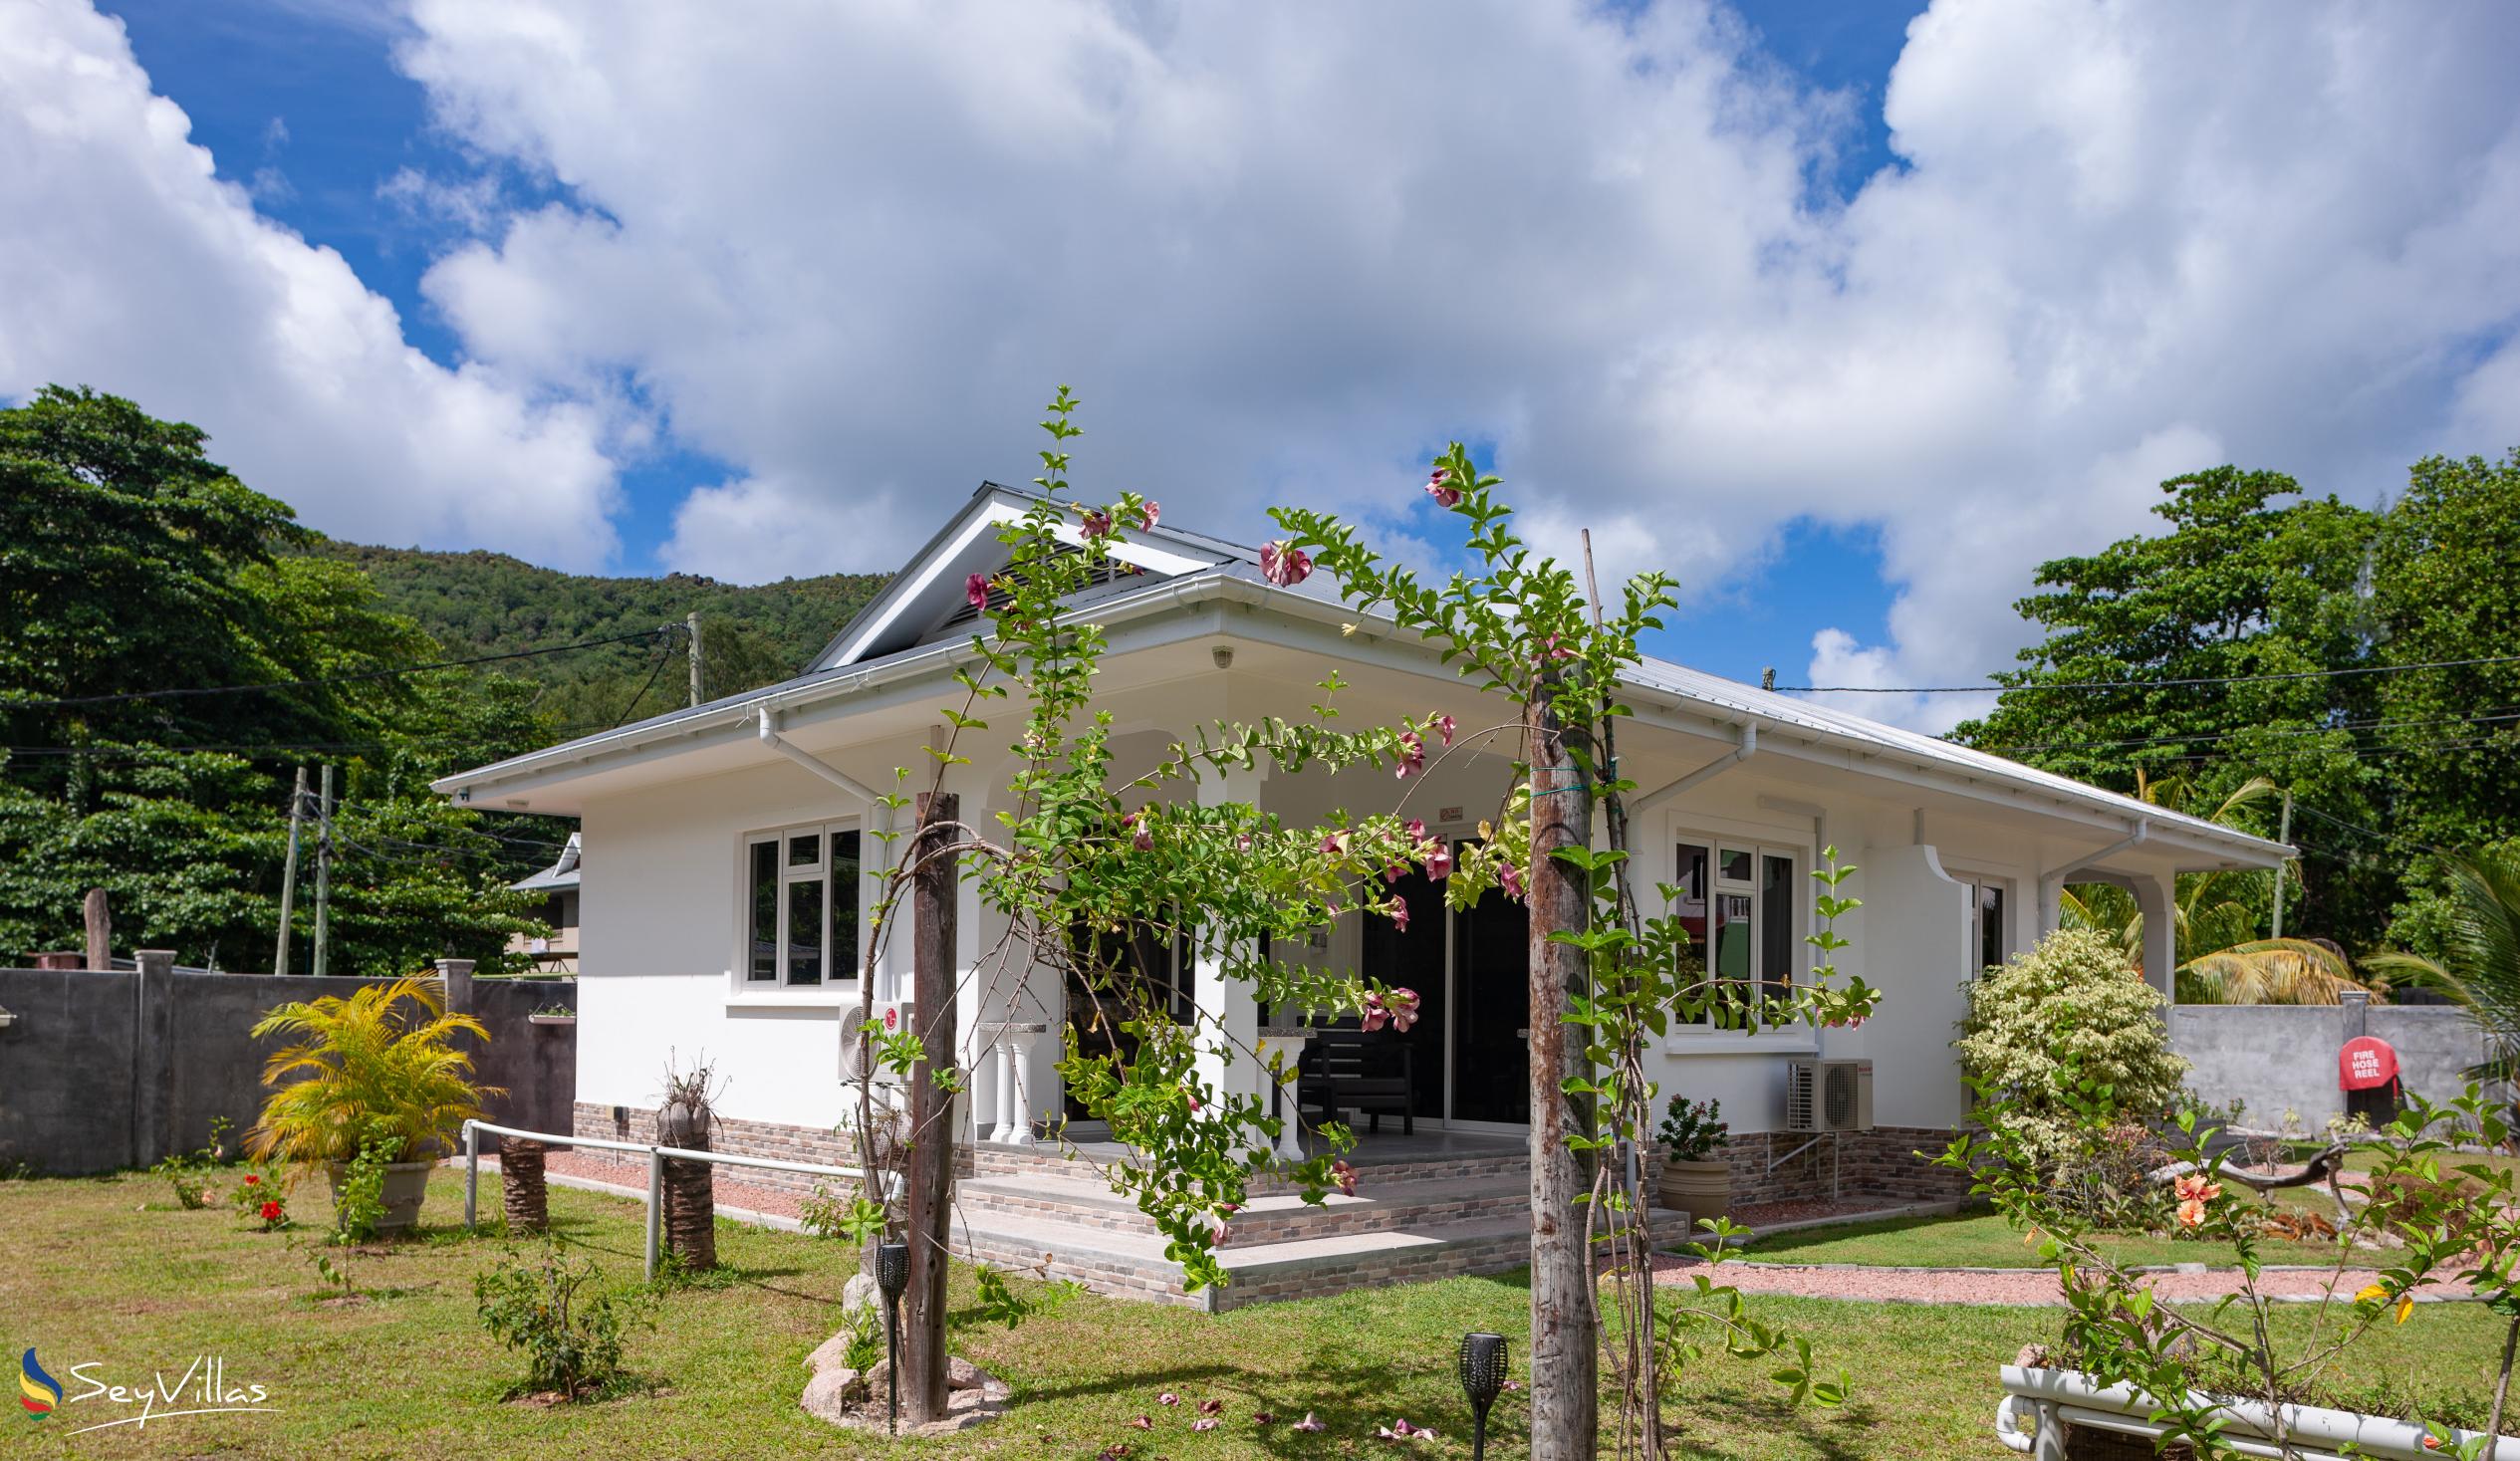 Foto 10: ANV Holiday Apartments - Aussenbereich - Praslin (Seychellen)